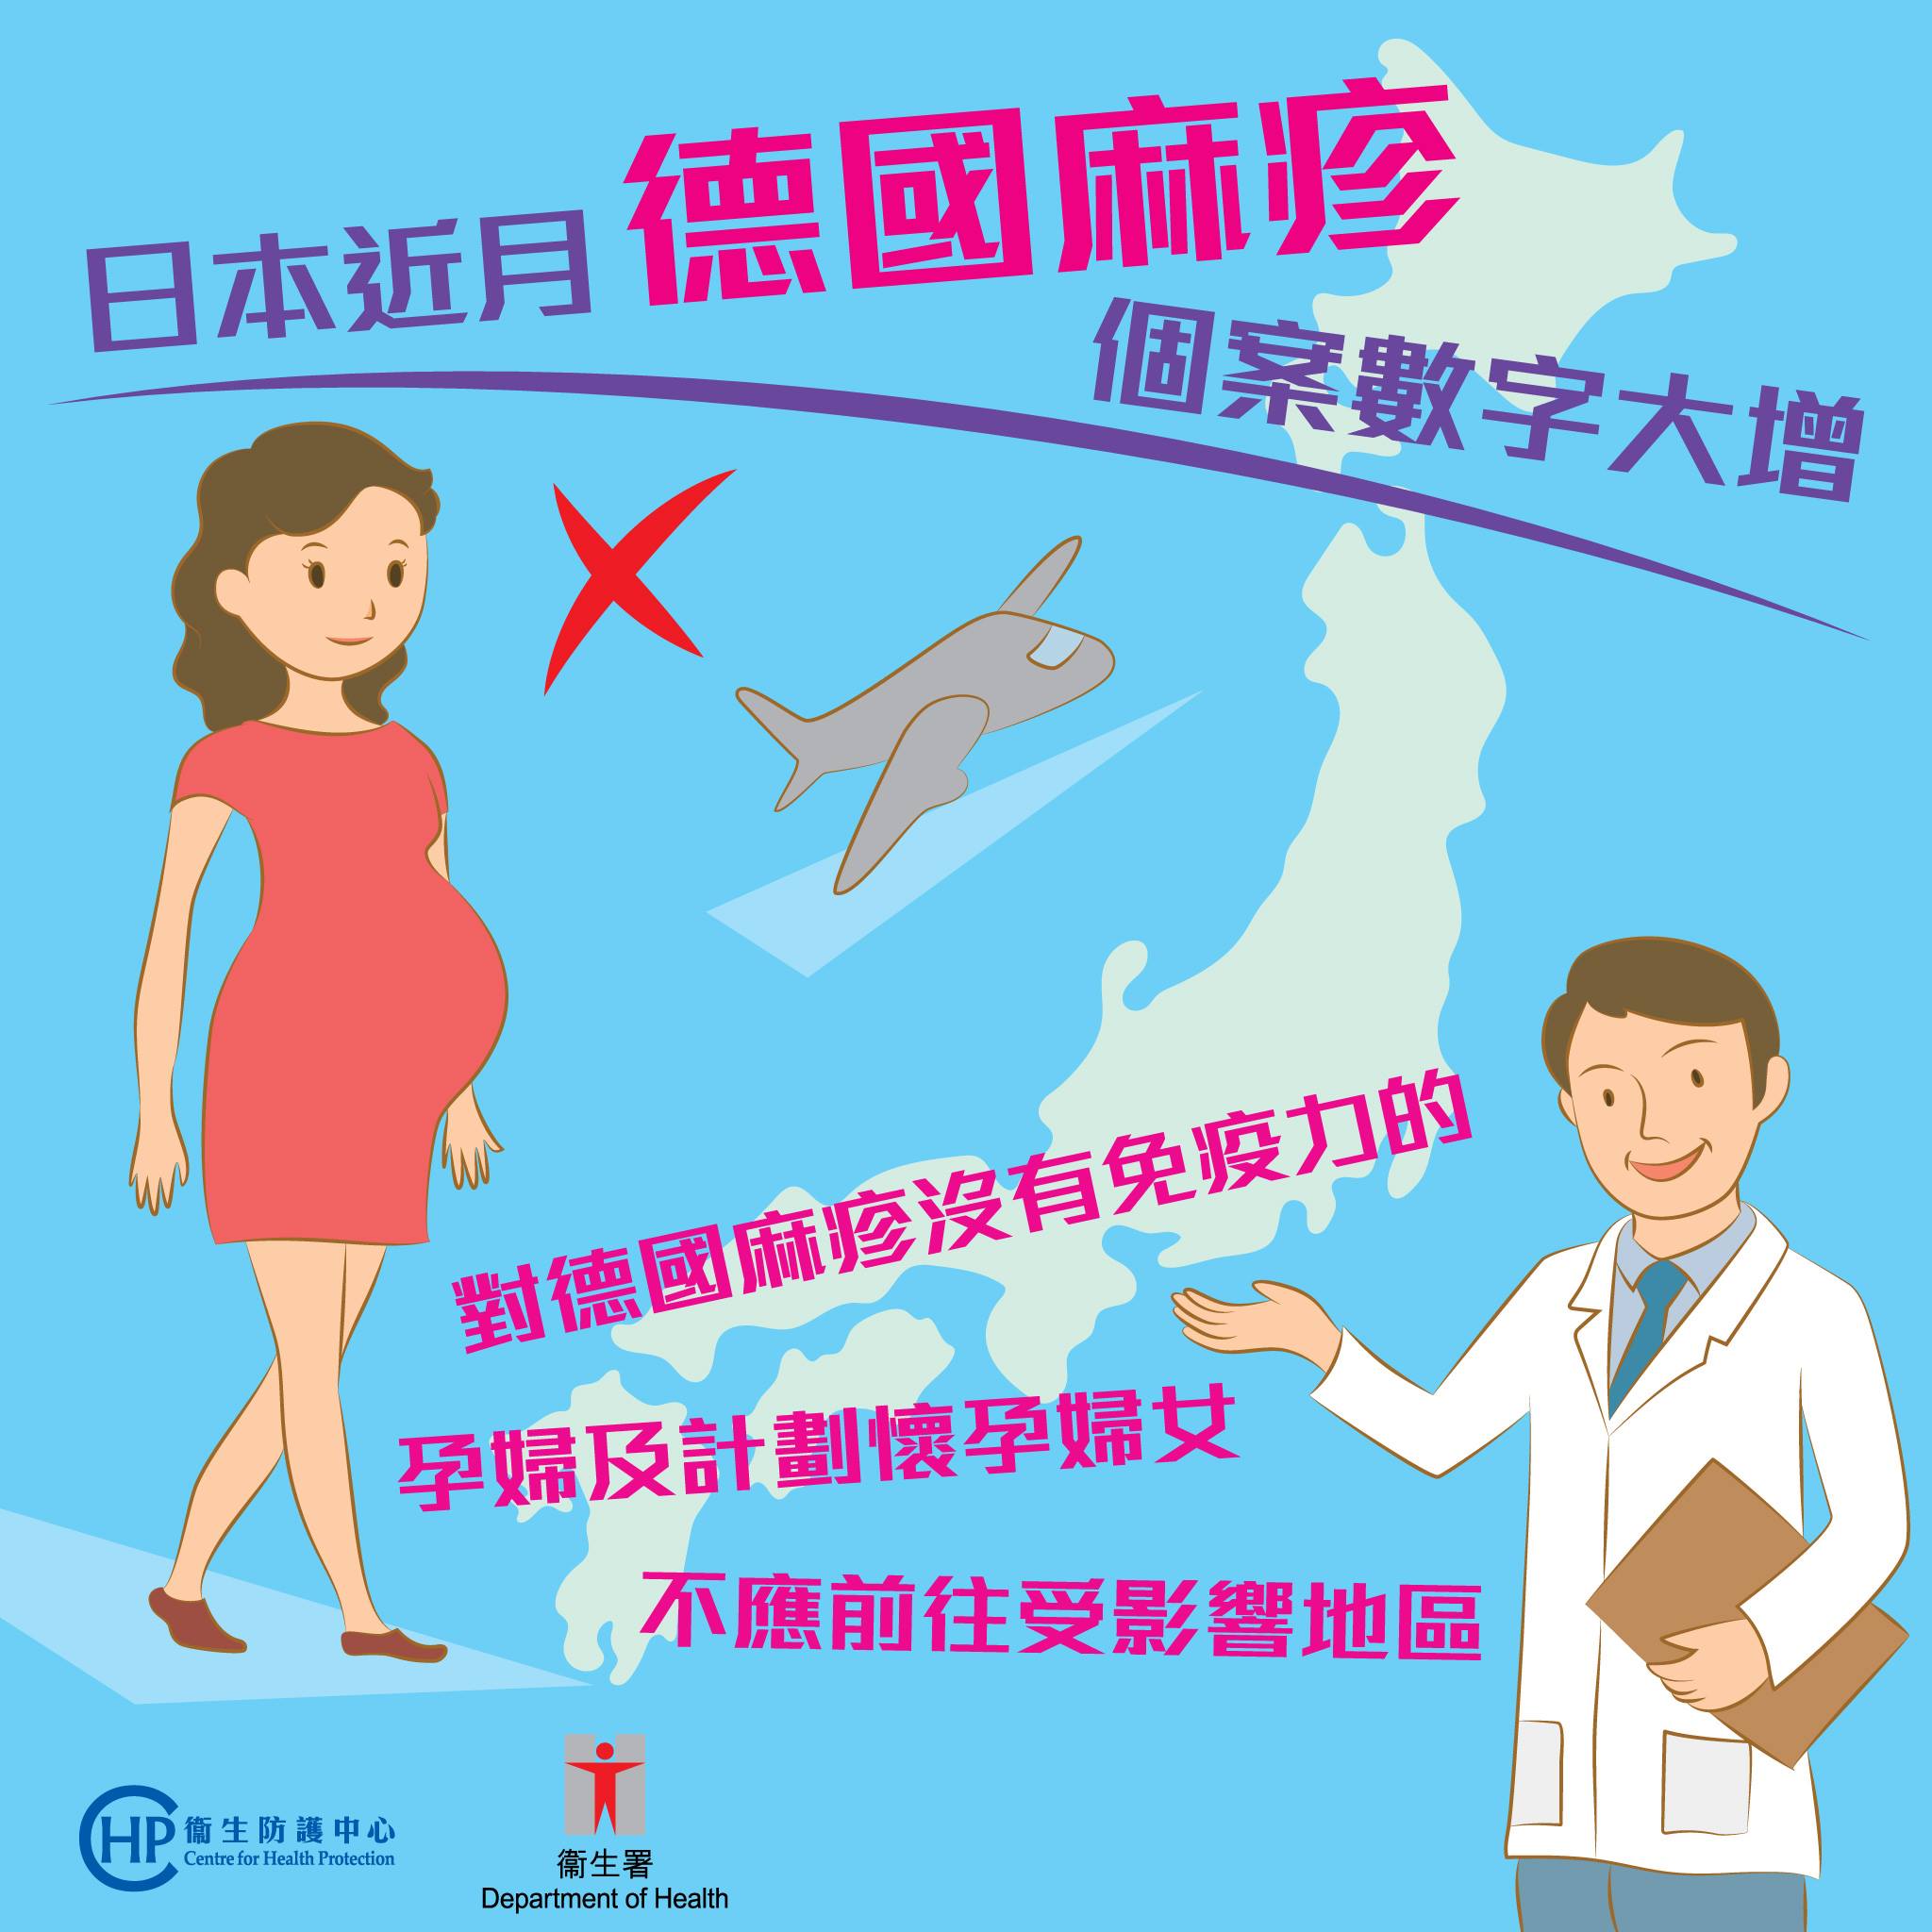 德國麻疹日本爆發個案 孕婦不應在期間前往日本